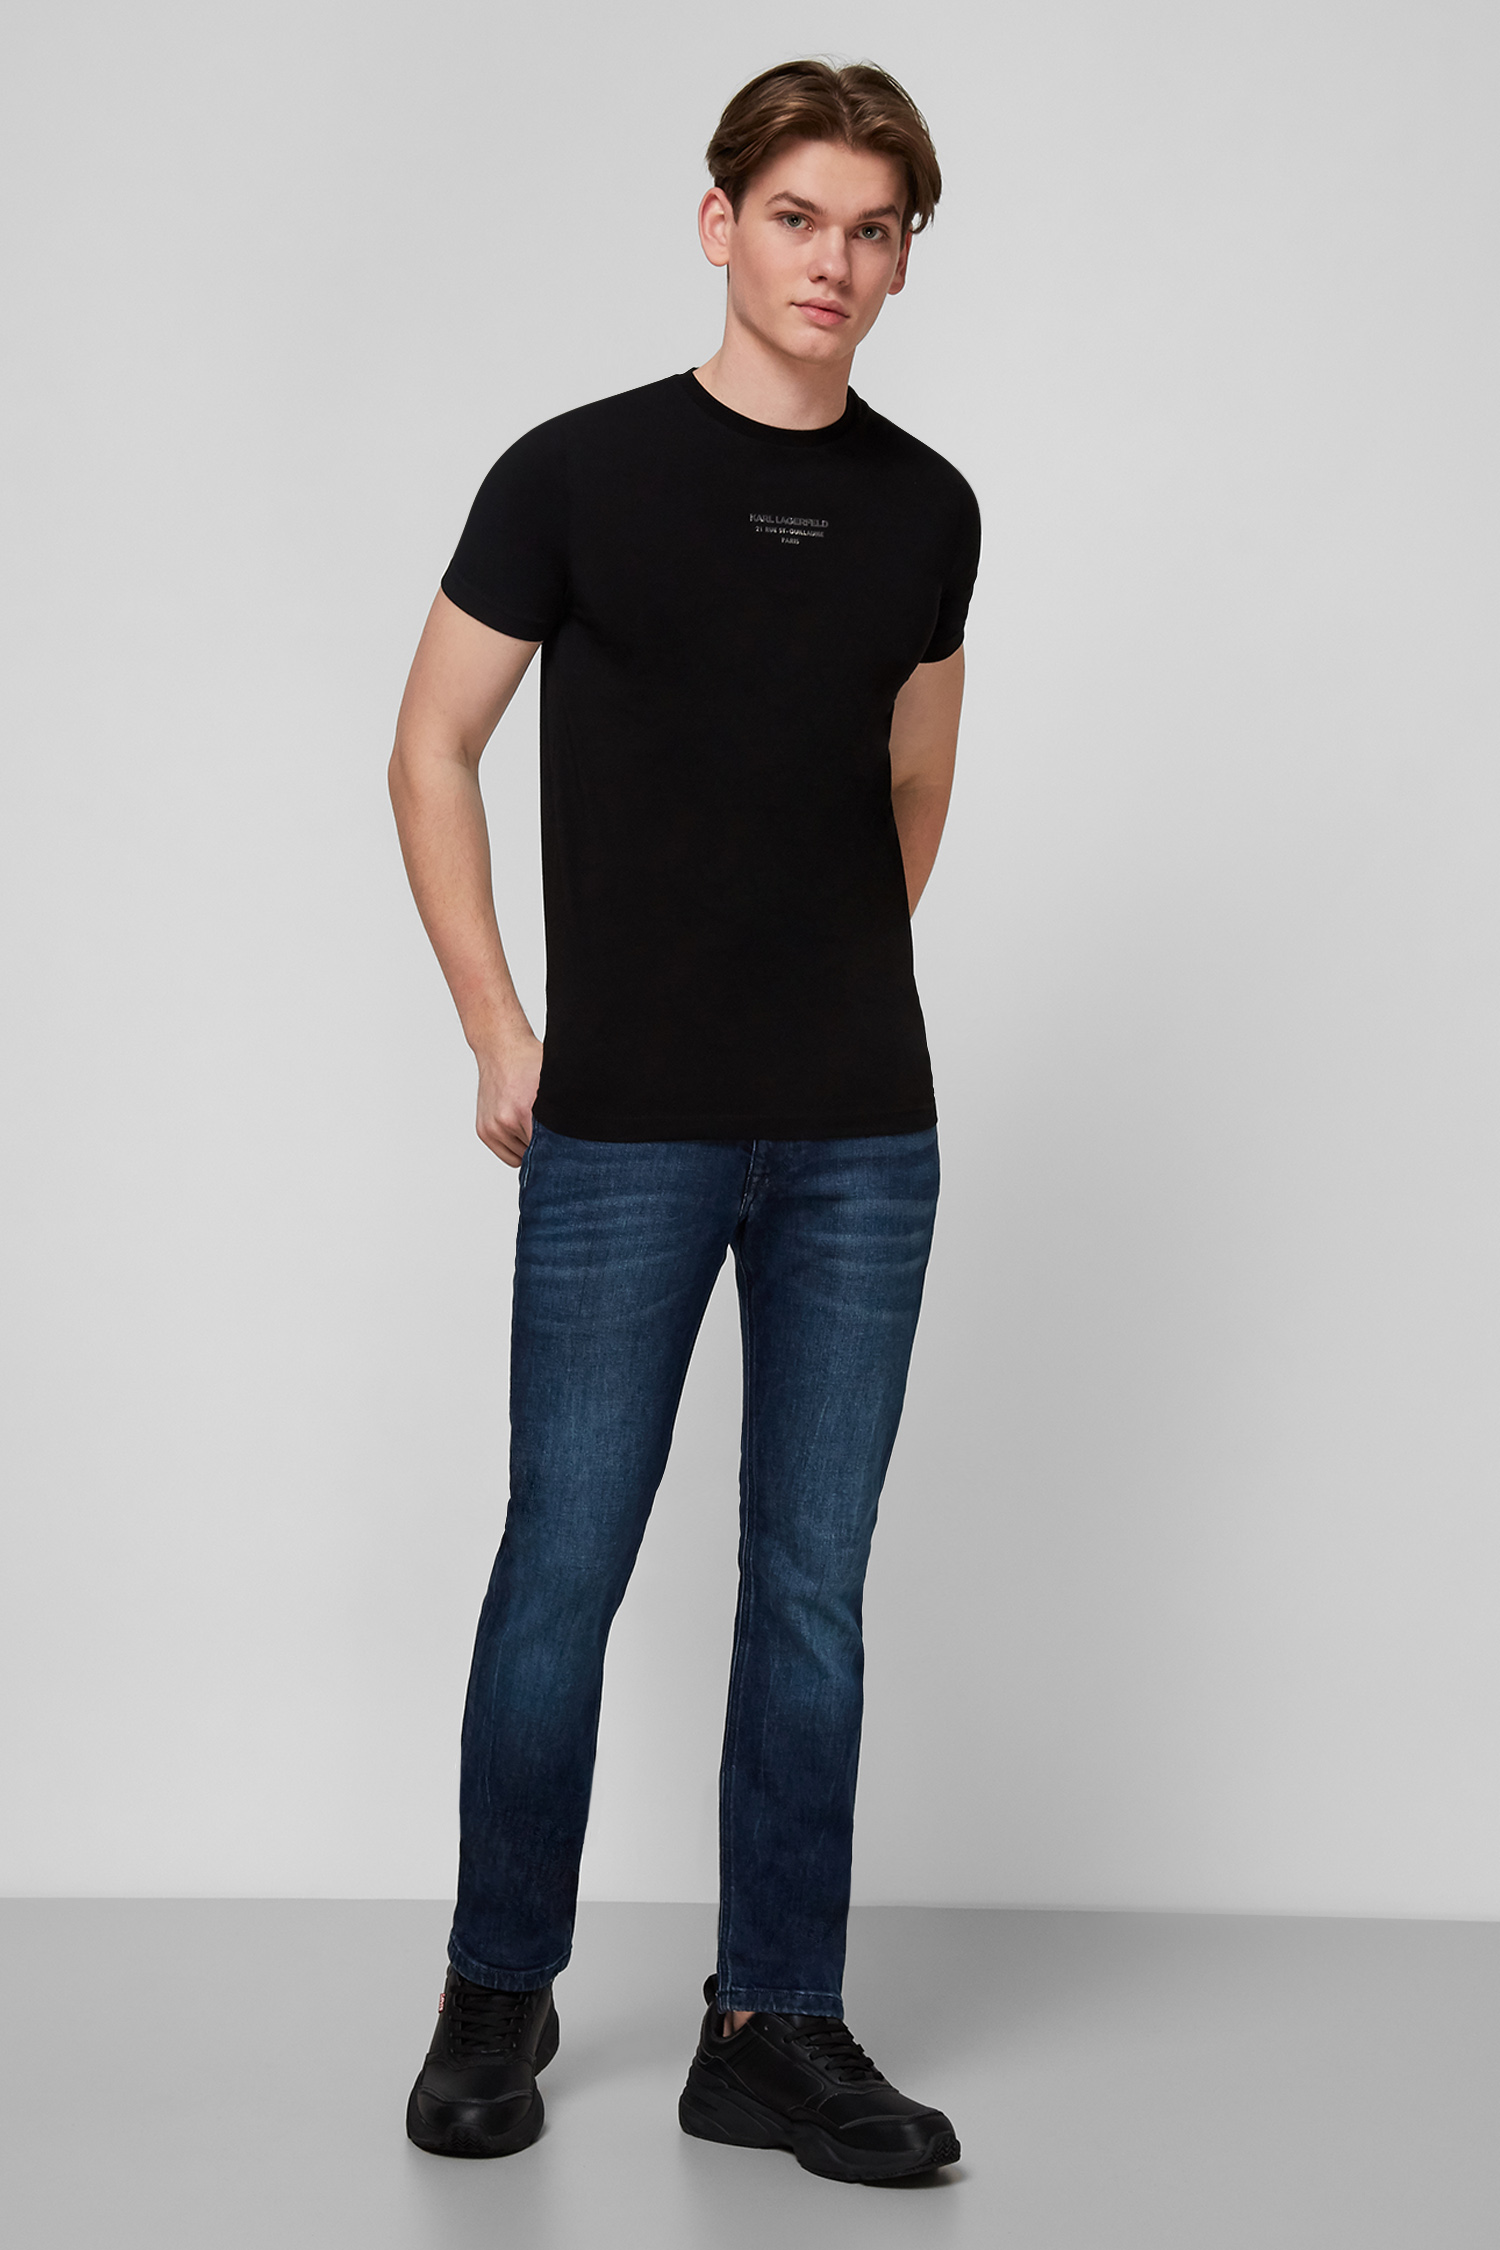 Чорна футболка для хлопців Karl Lagerfeld 511221.755034;990